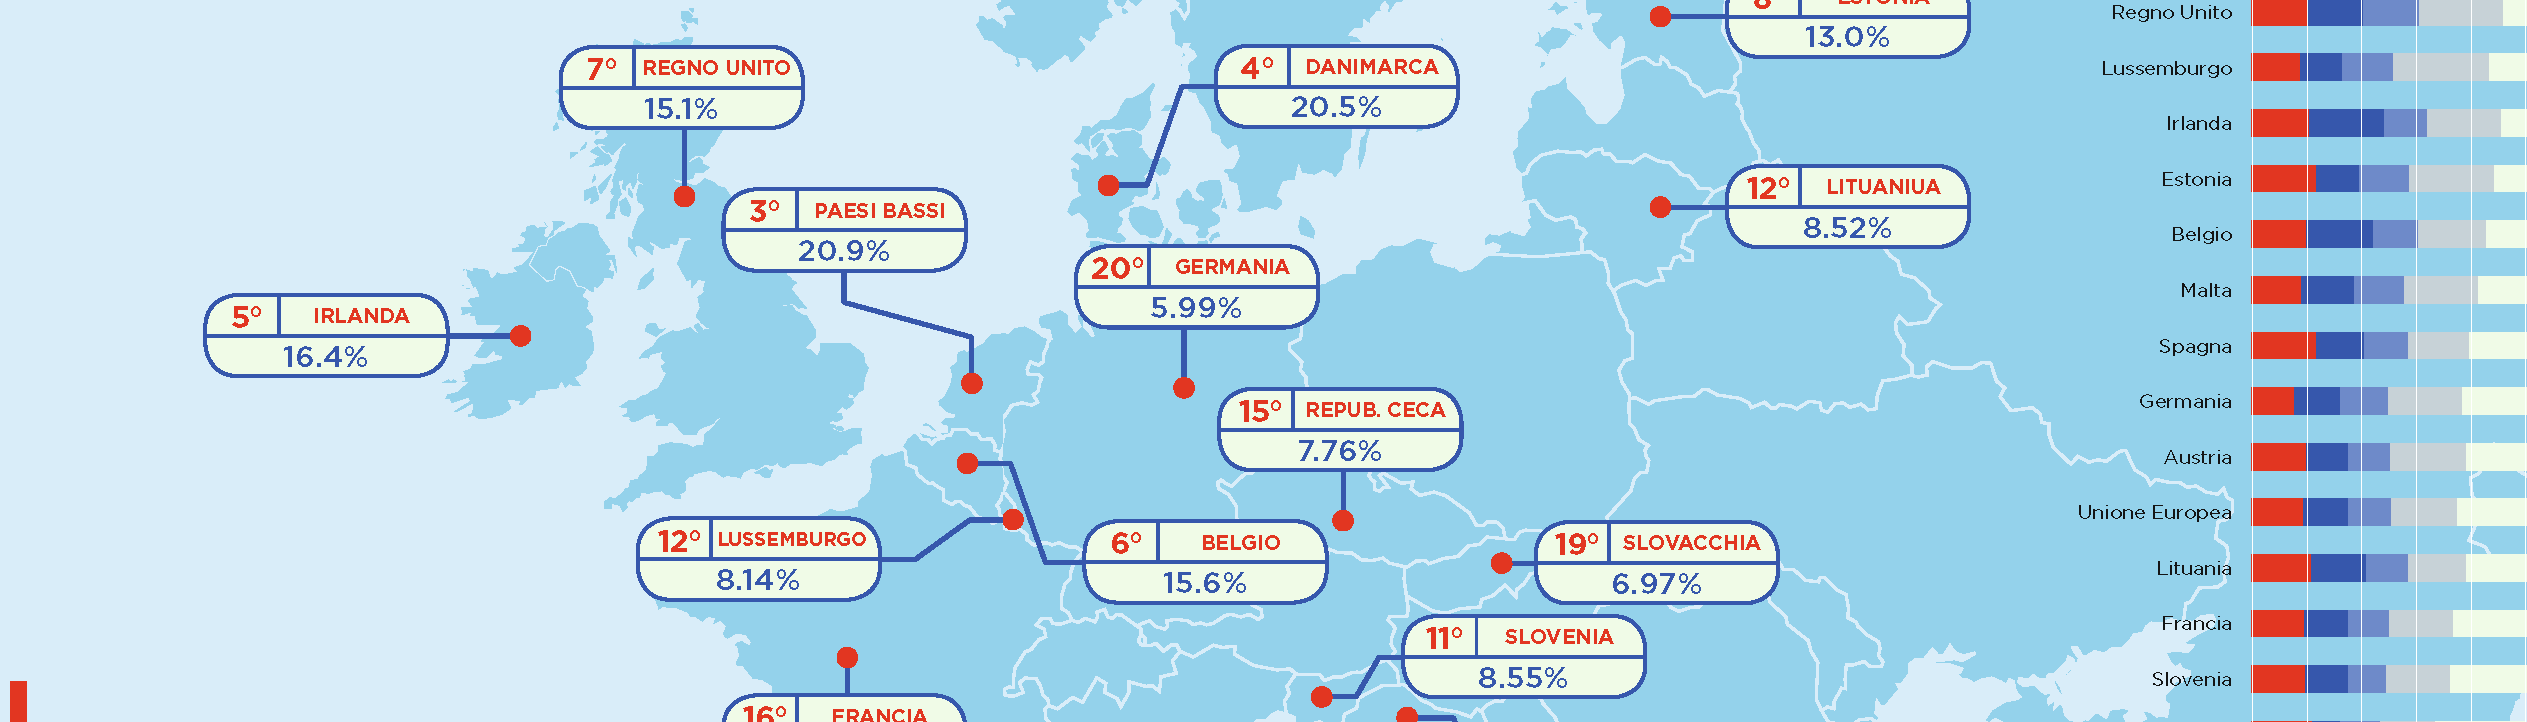 Quanto investe l’Europa nel cloud? Infografica